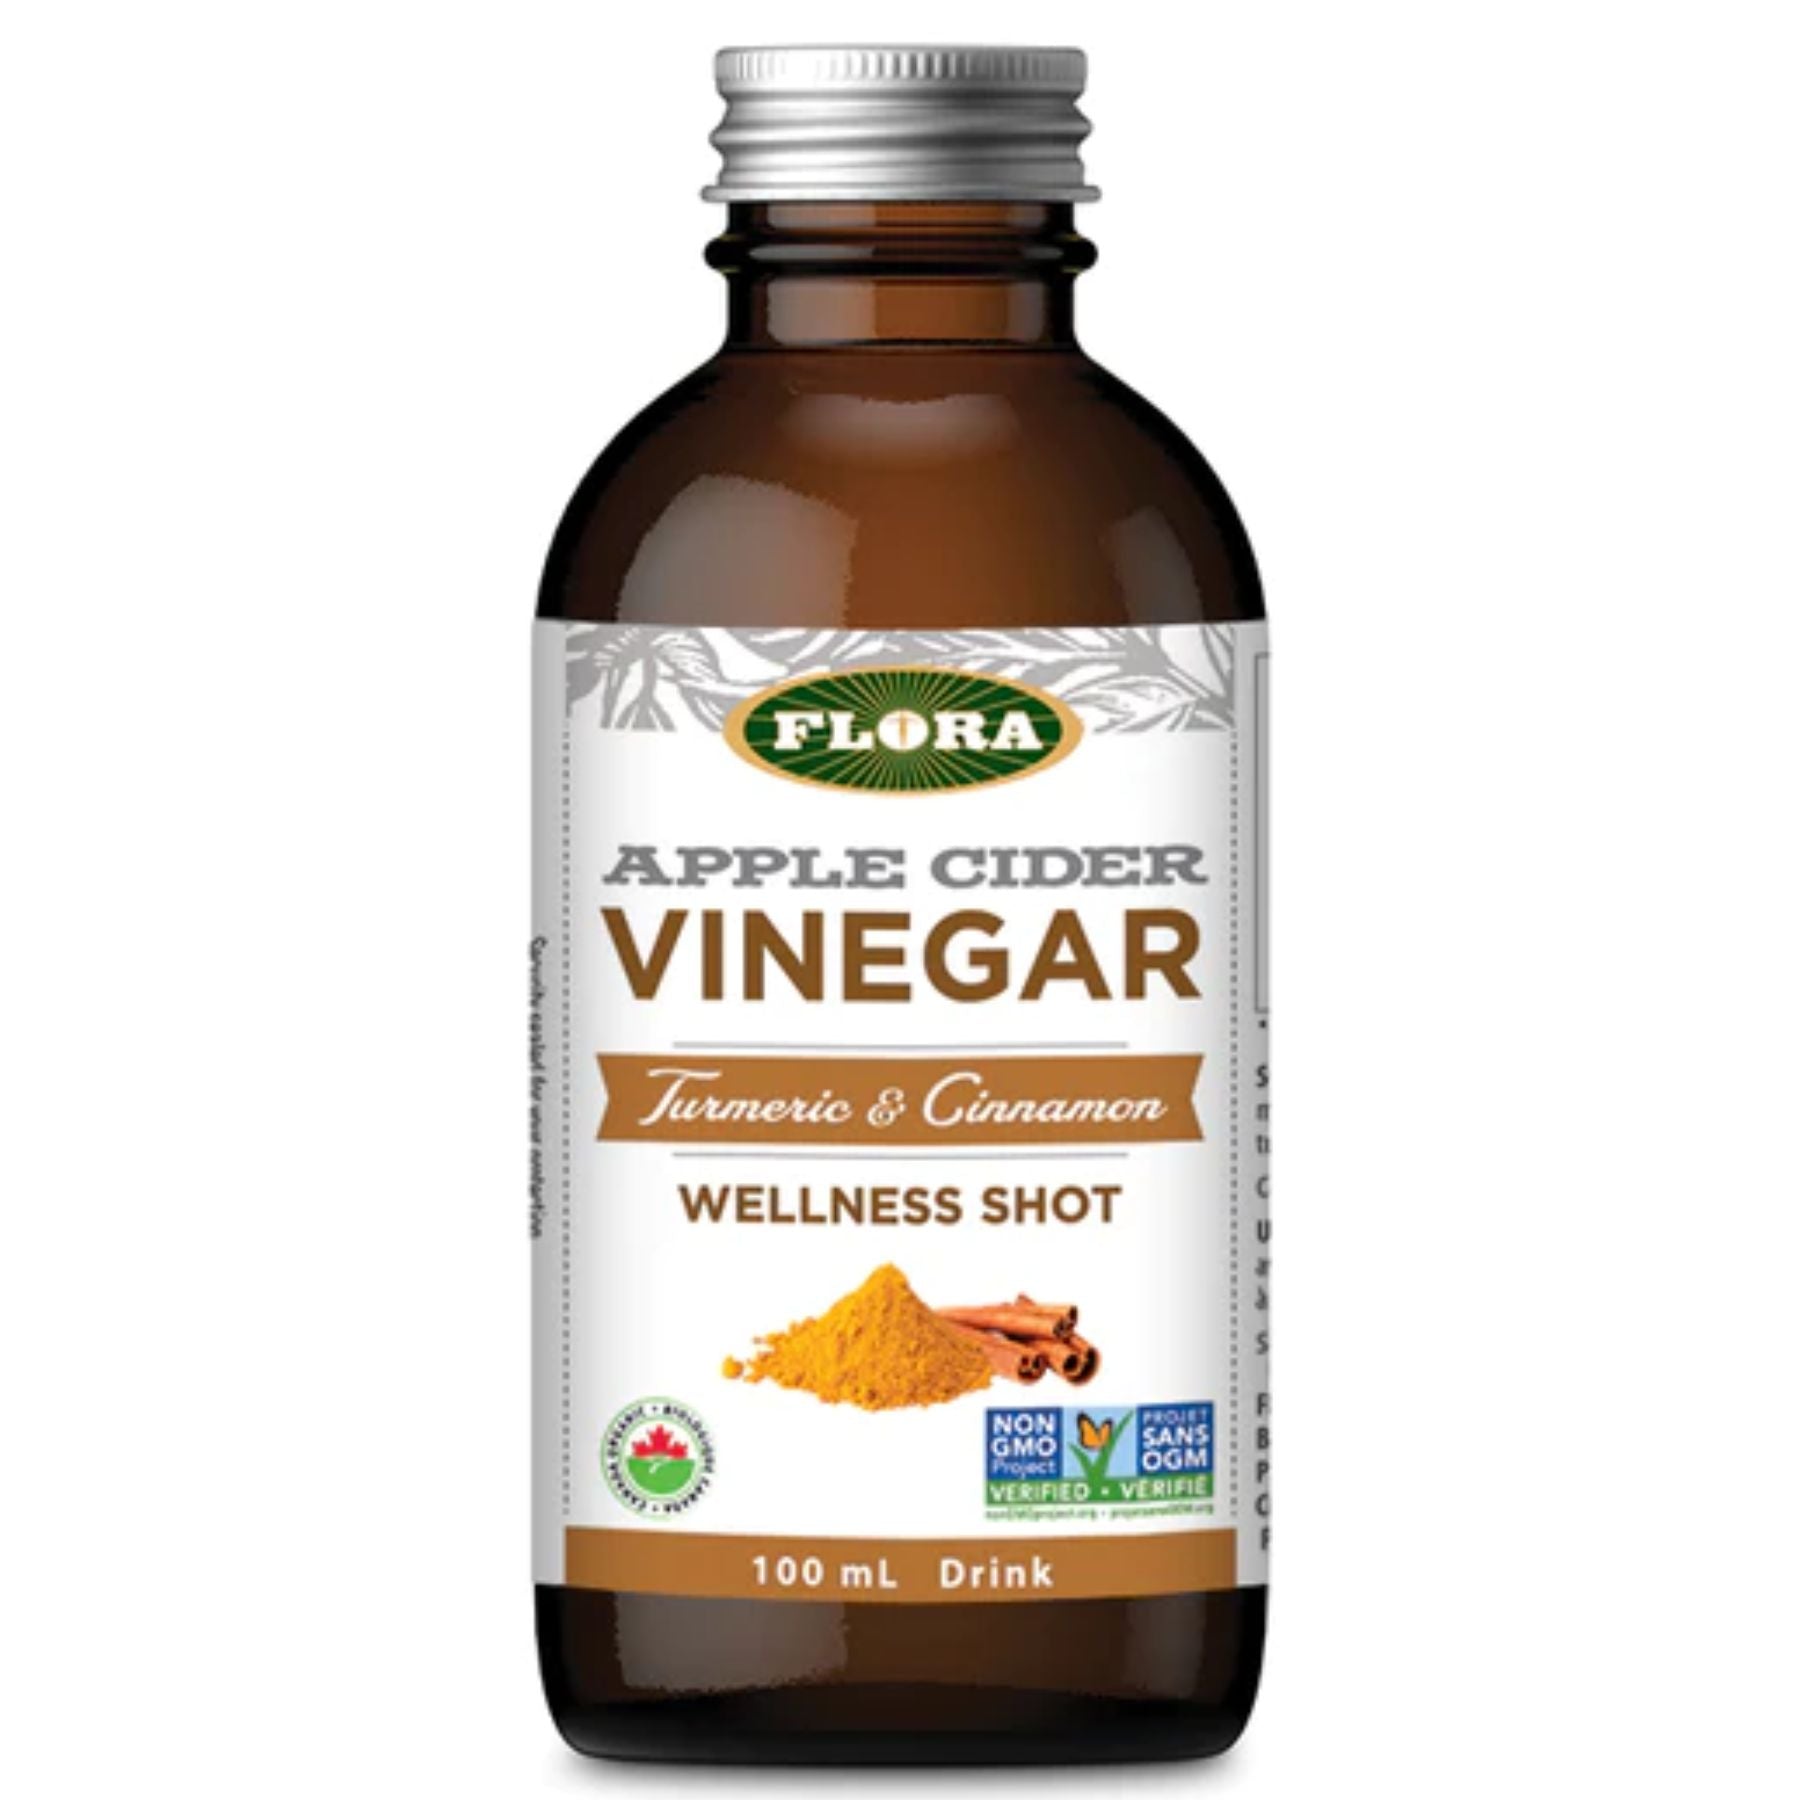 Flora Apple Cider Vinegar - Turmeric & Cinnamon 100ml